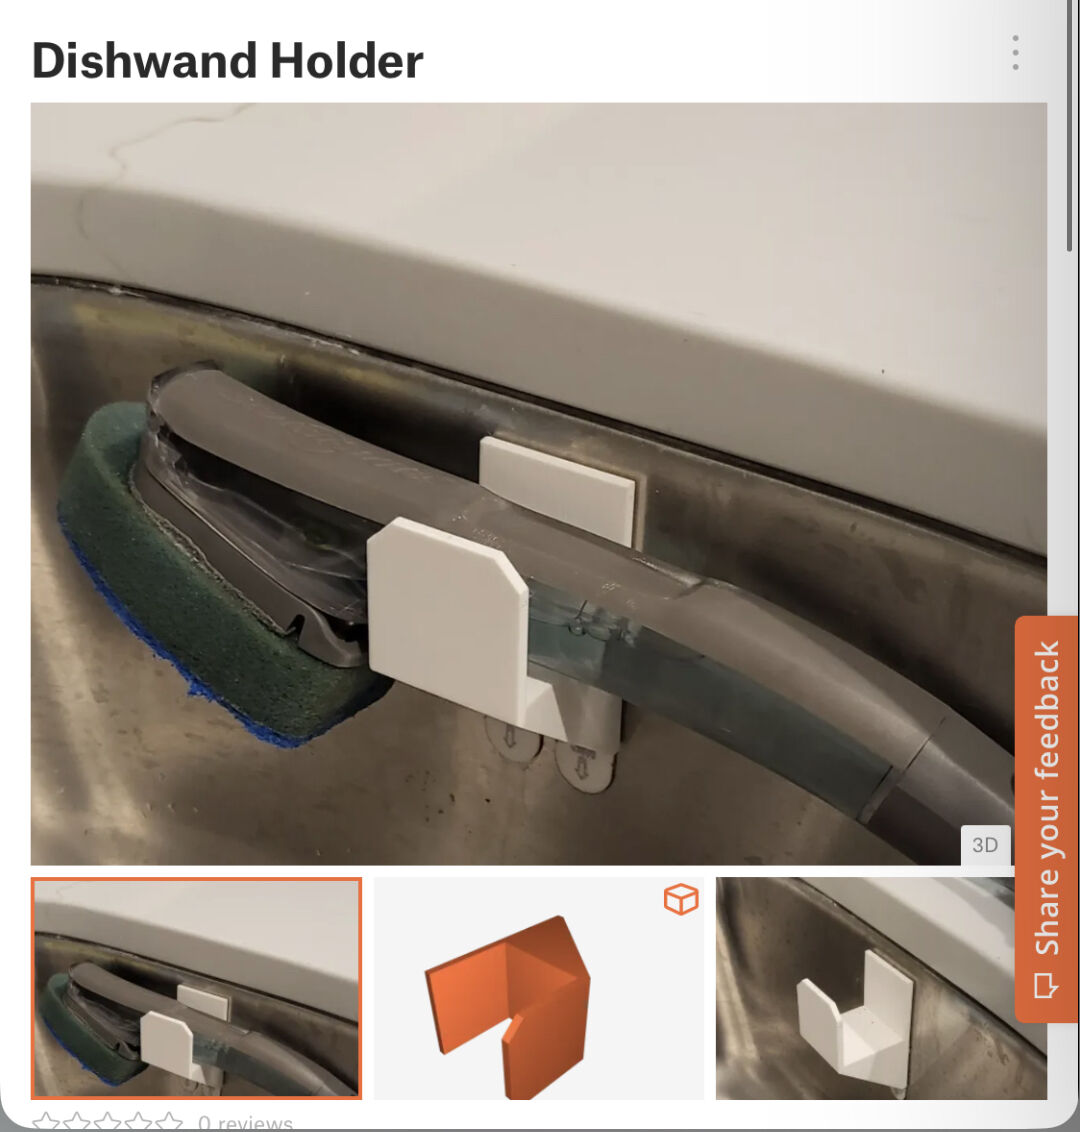 Dishwand Holder, 3D models download